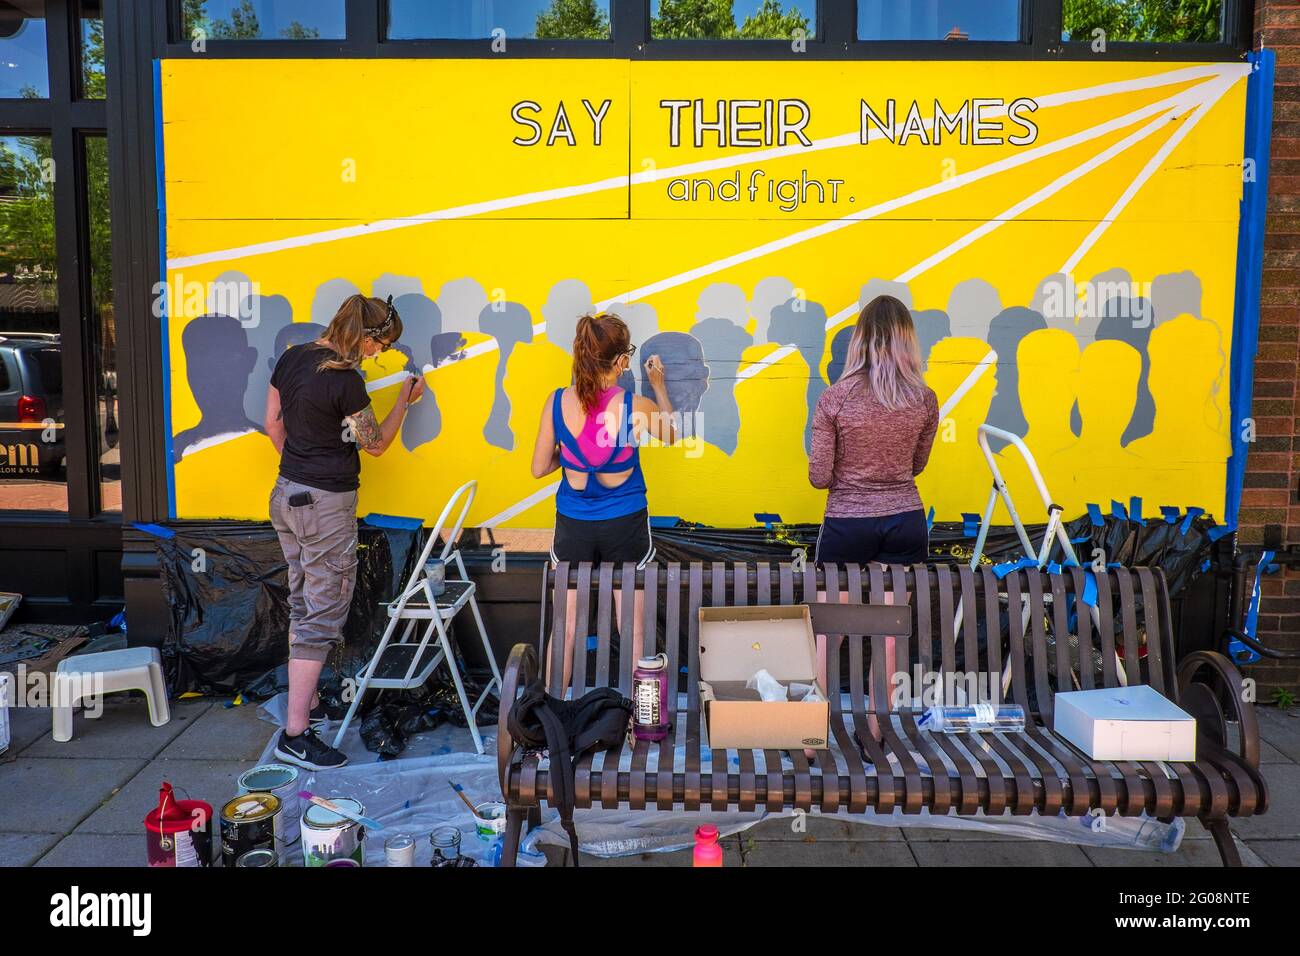 Las mujeres pintan un mural durante las protestas de George Floyd, St. Paul, Minnesota, EE.UU Foto de stock